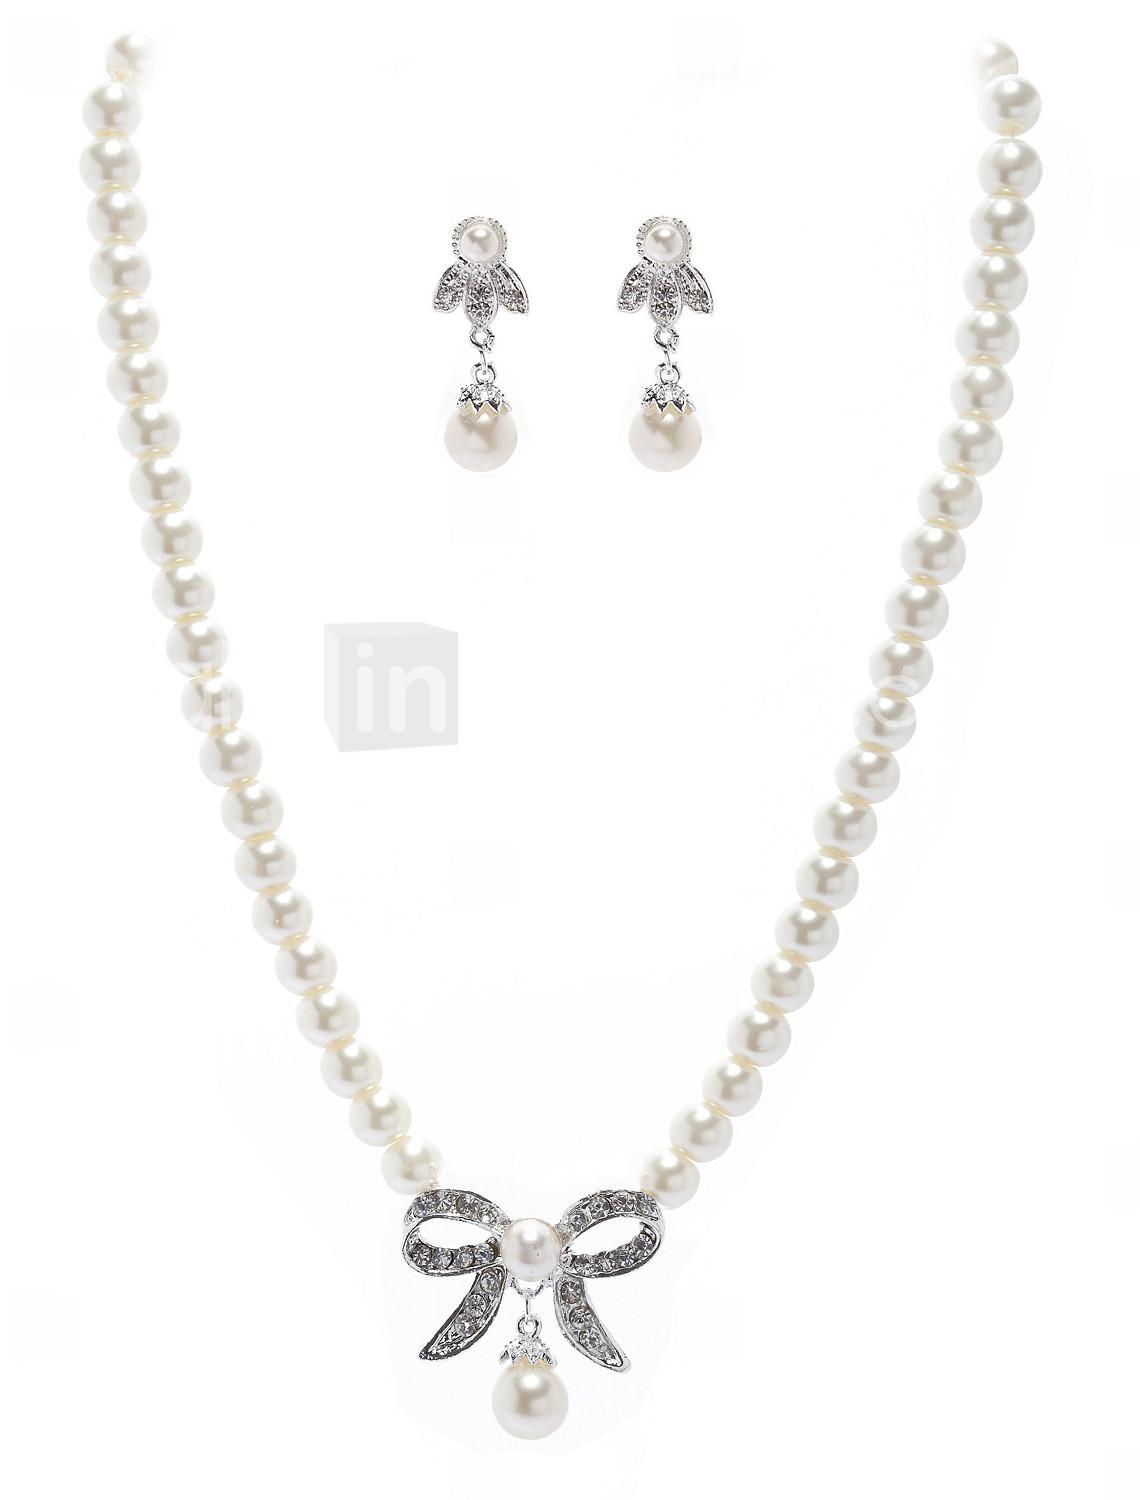 Foto perla con collar de diamantes de imitación de proa y aretes